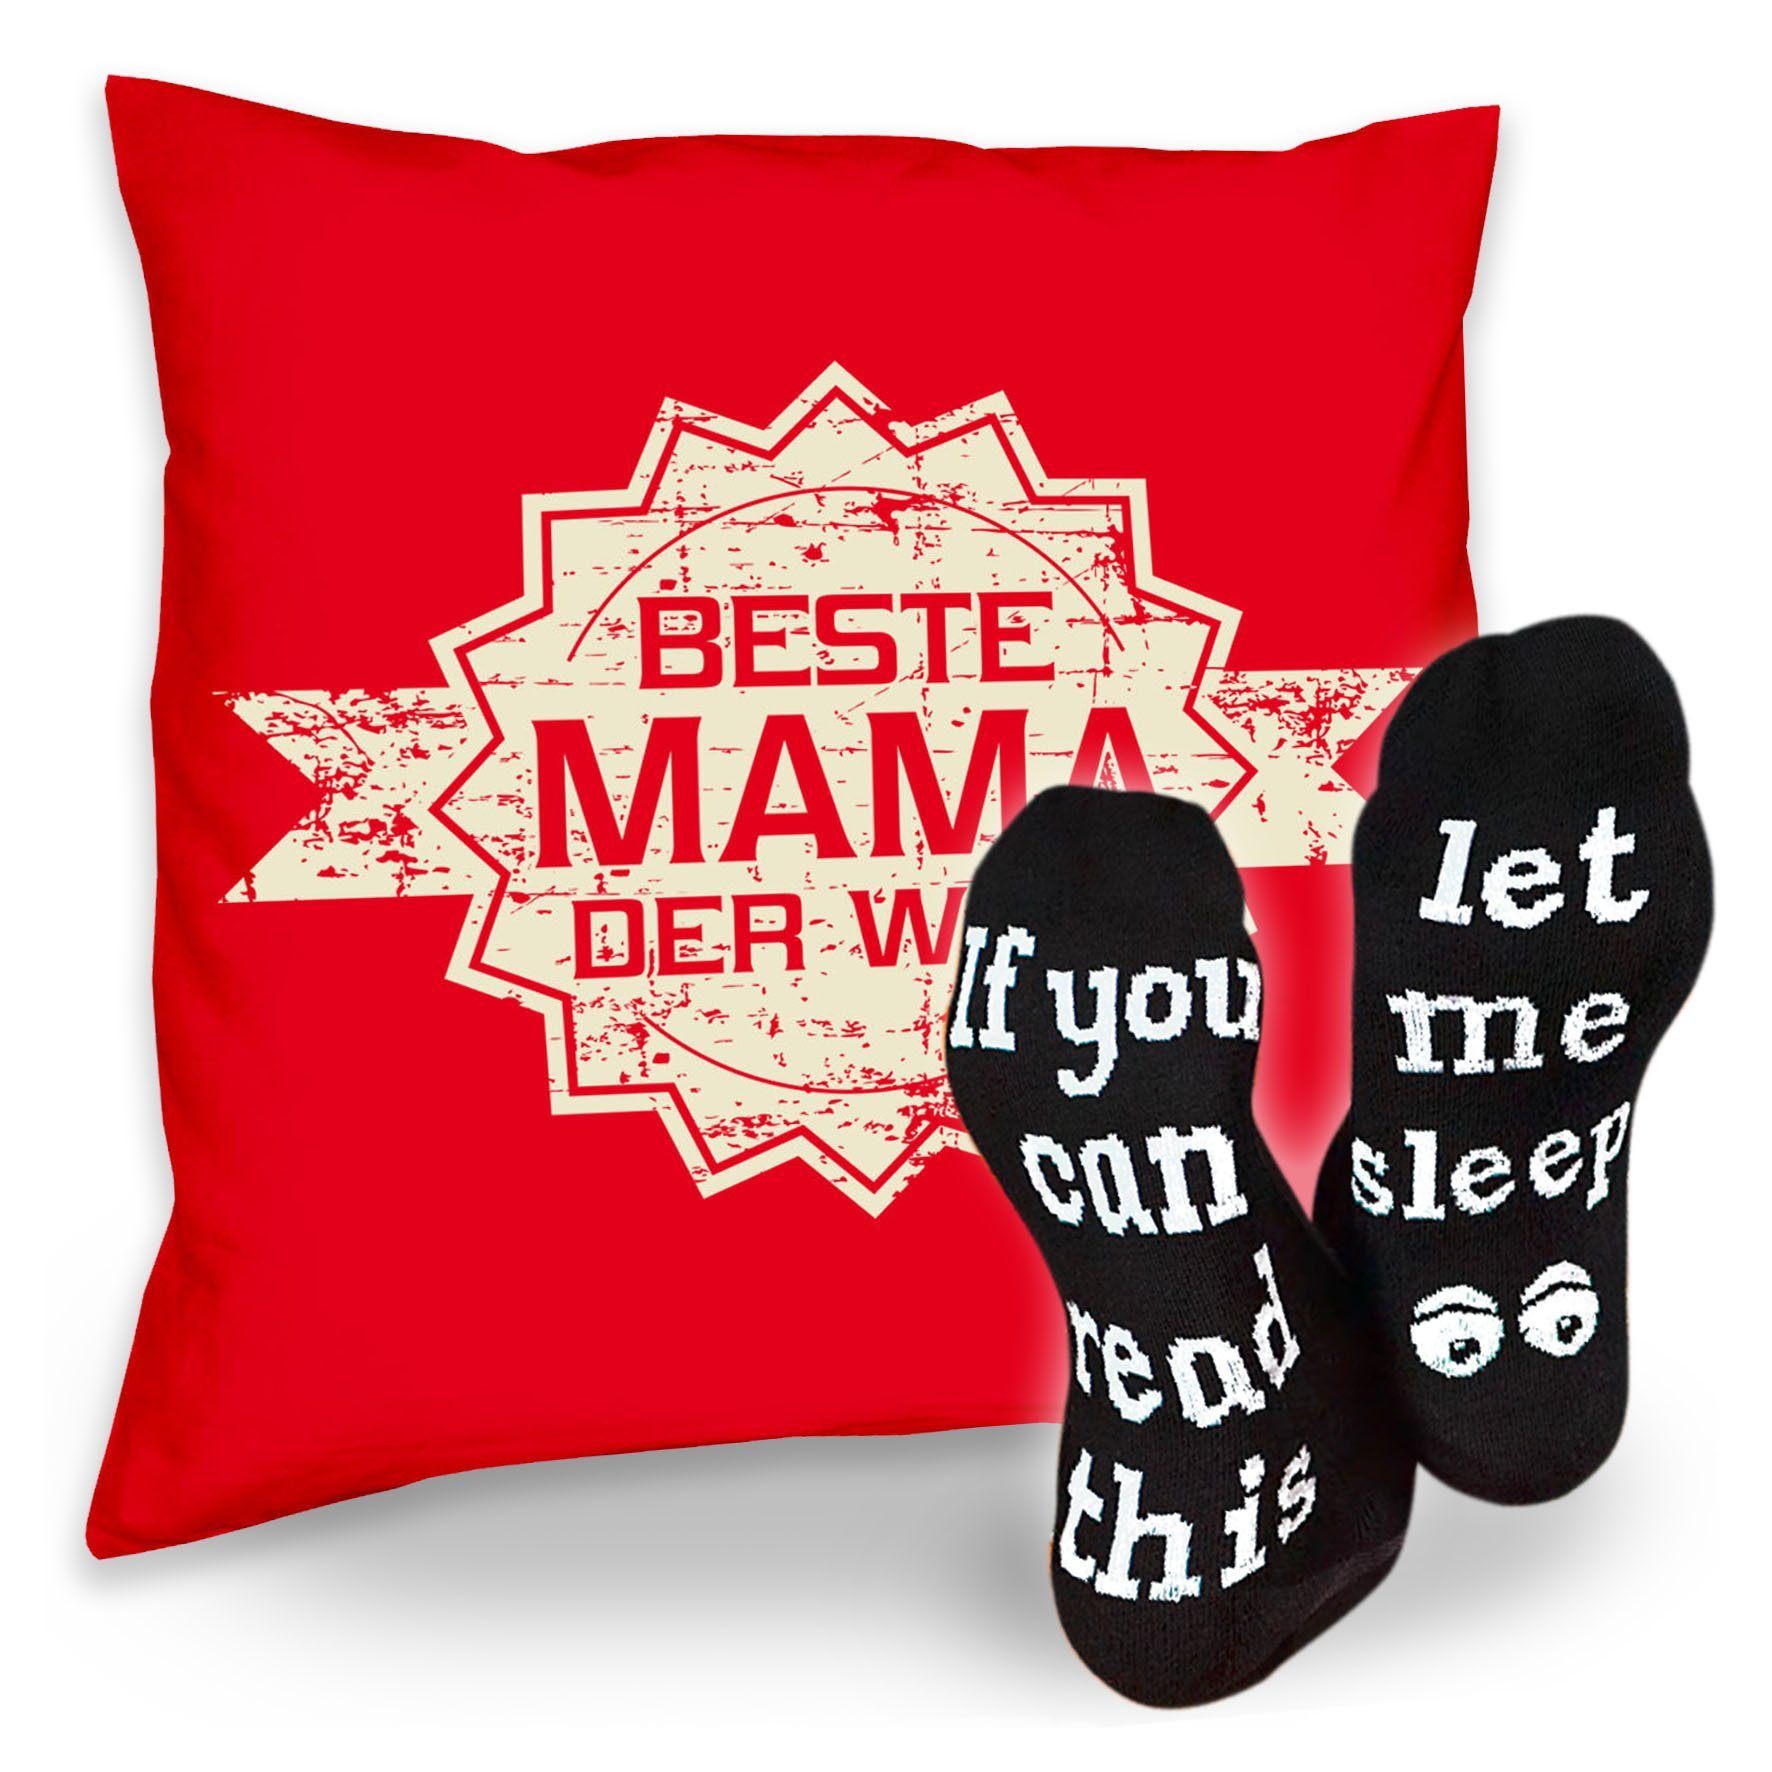 Geburtstagsgeschenk Beste Socken Soreso® Sprüche & rot der Mama Welt Kissen Sleep, Stern Geschenk Dekokissen